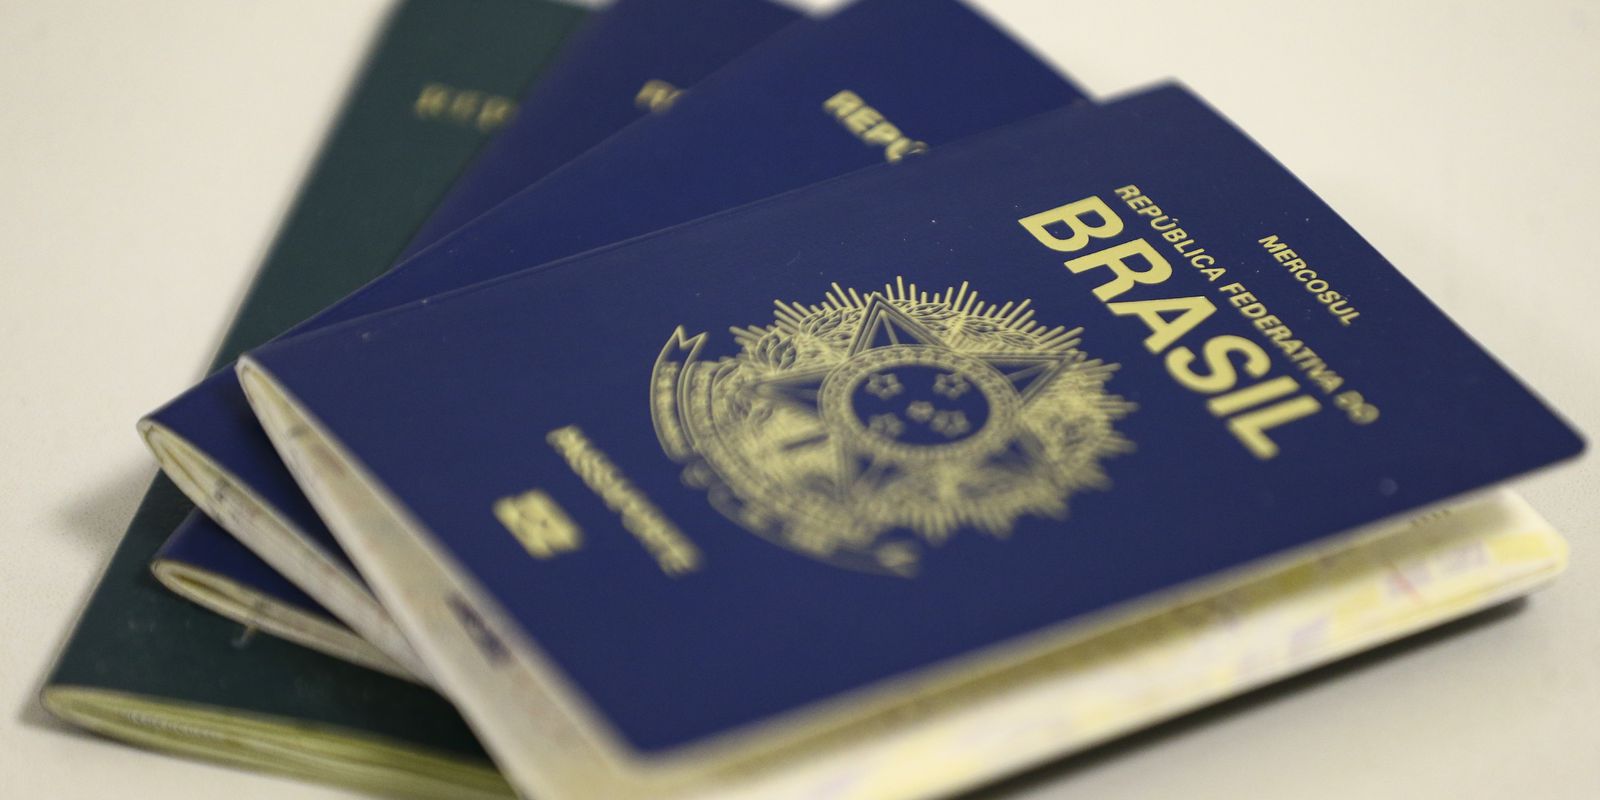 Governo remaneja R$ 58,76 milhões para passaportes e carros-pipa